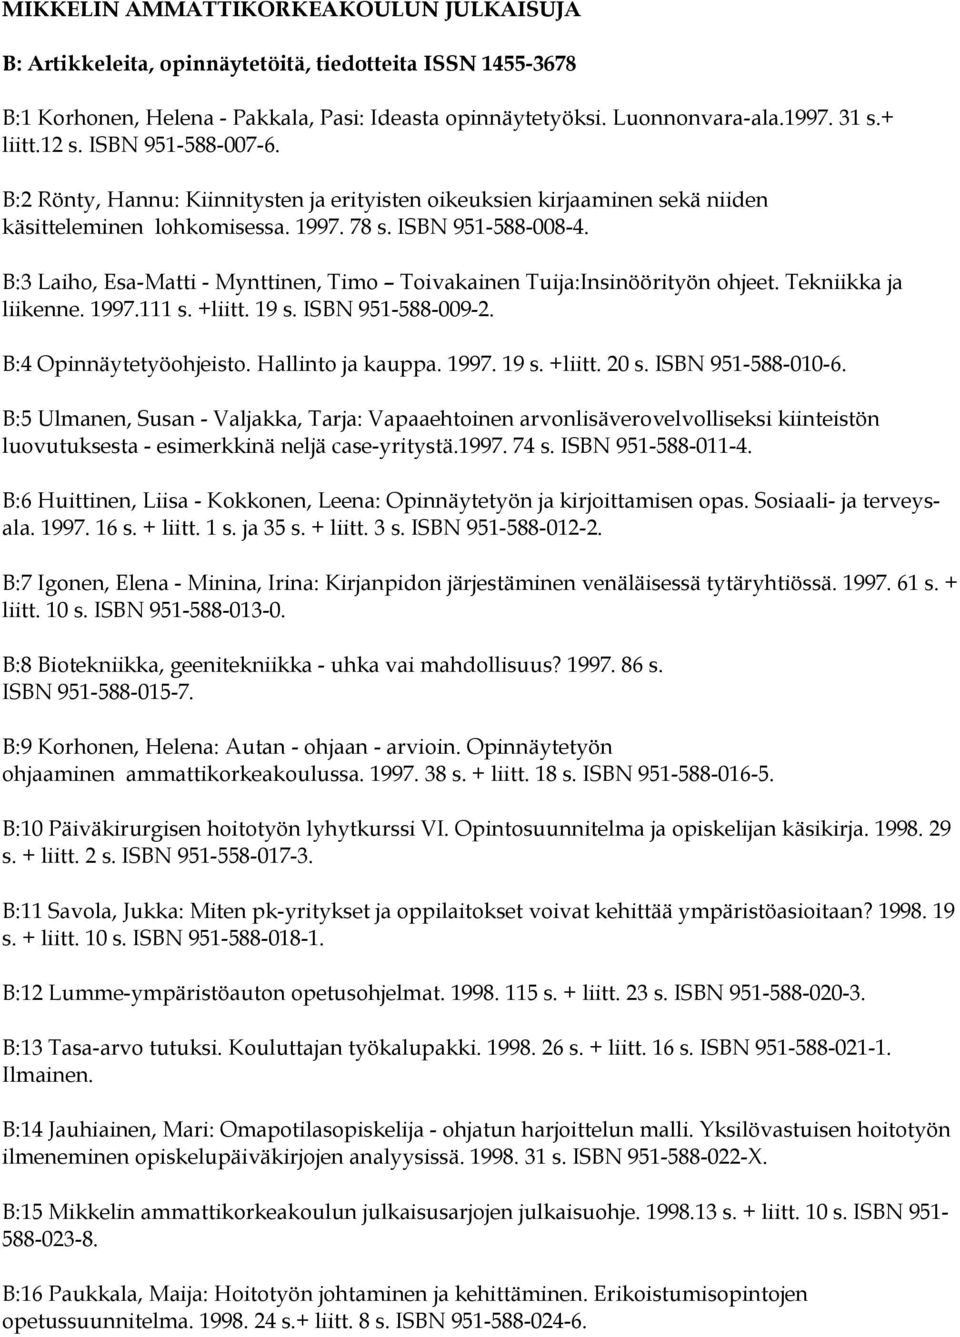 B:3 Laiho, Esa-Matti - Mynttinen, Timo Toivakainen Tuija:Insinöörityön ohjeet. Tekniikka ja liikenne. 1997.111 s. +liitt. 19 s. ISBN 951-588-009-2. B:4 Opinnäytetyöohjeisto. Hallinto ja kauppa. 1997. 19 s. +liitt. 20 s.